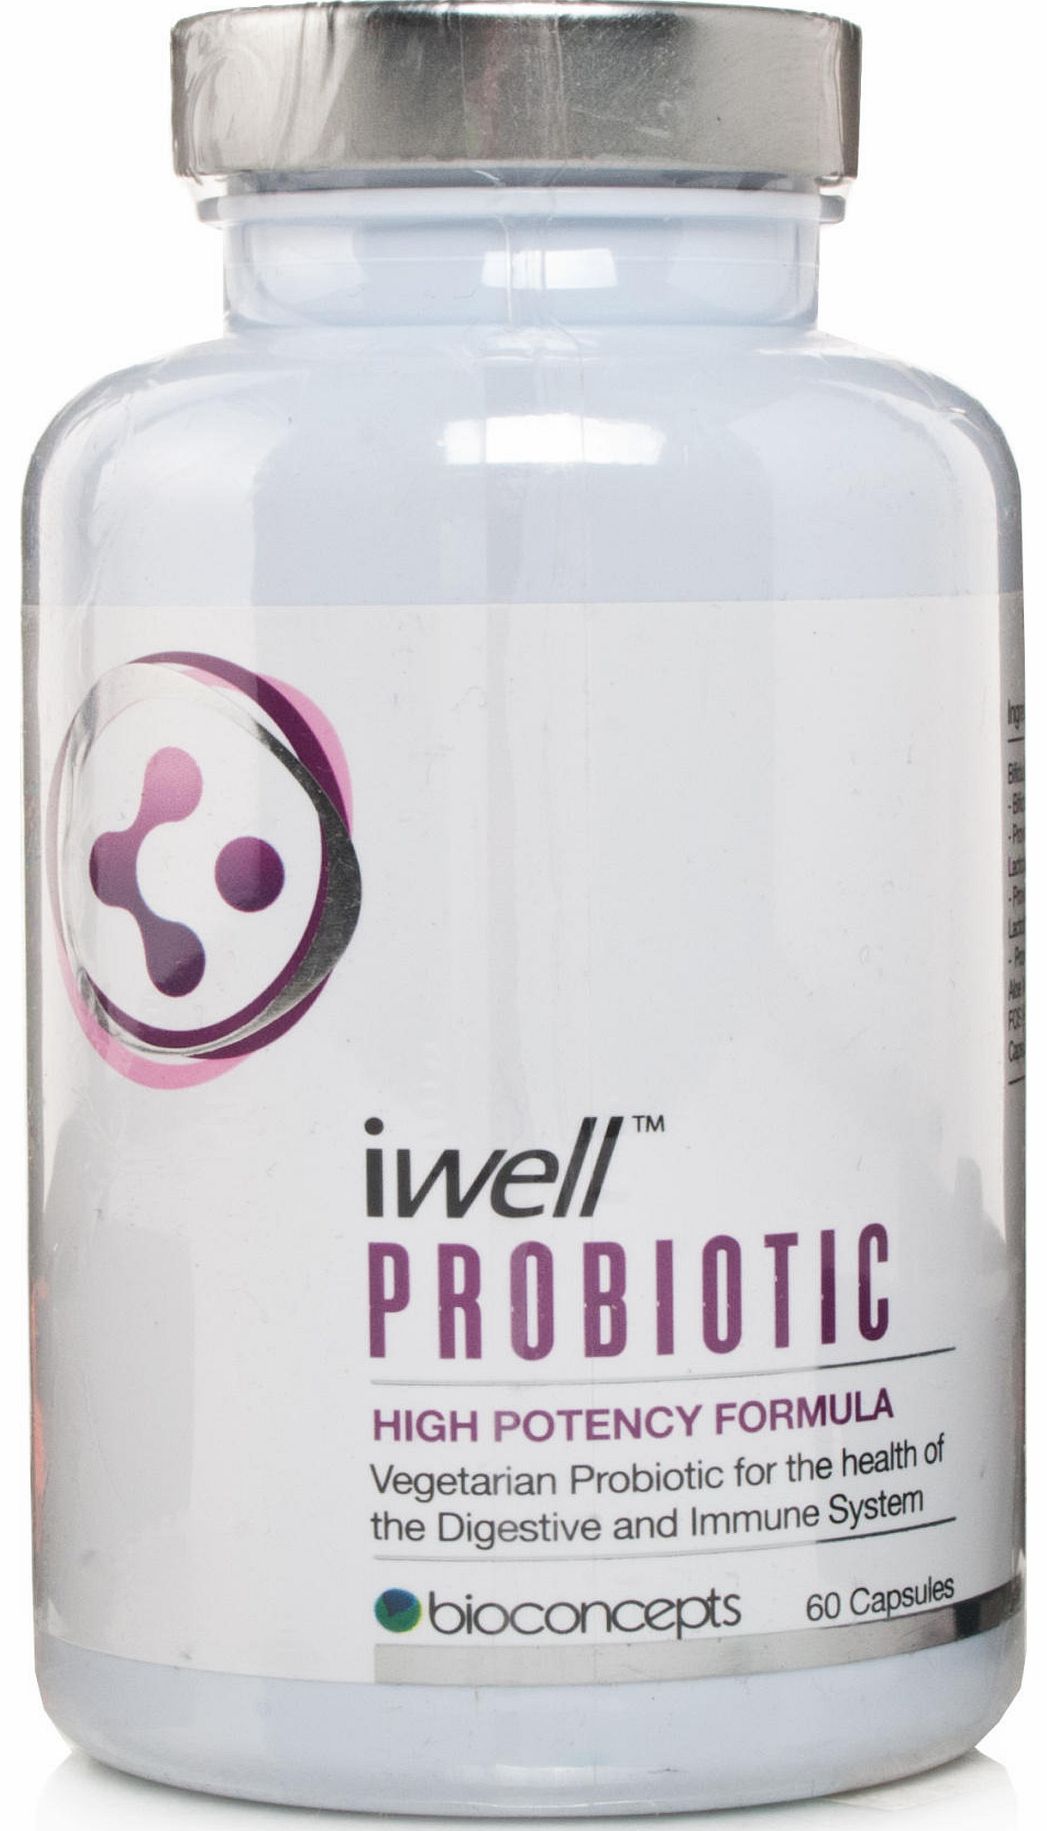 Bioconcepts iwell Probiotic High Potency Formula